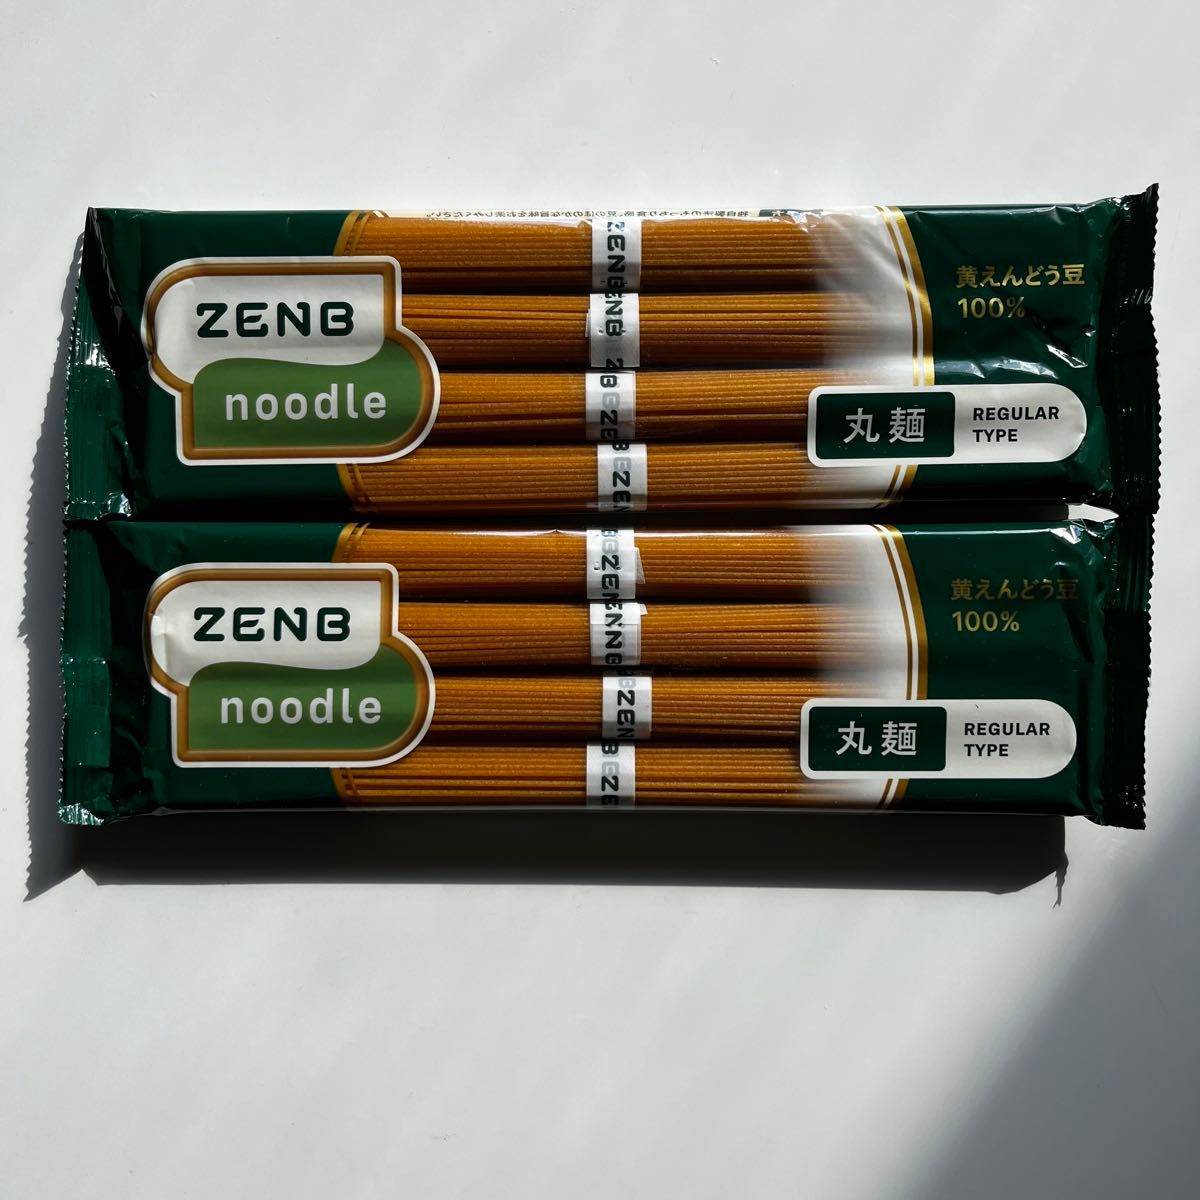 ZENB 丸麺 ゼンブ ヌードル 8食 (2袋) 